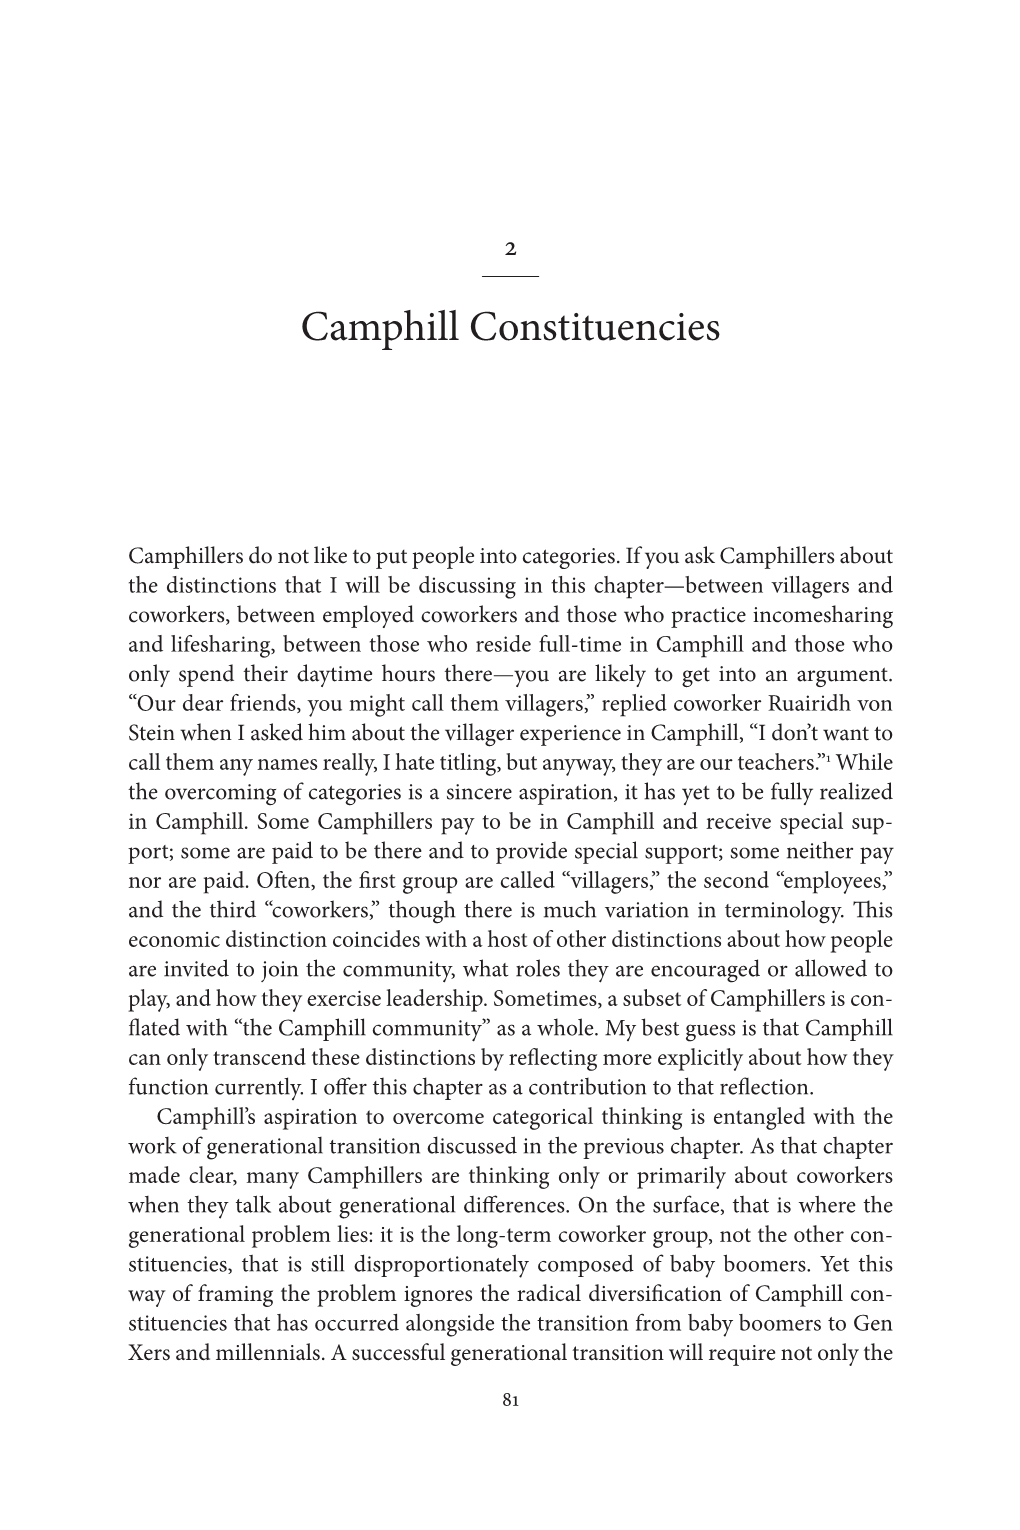 Camphill and the Future